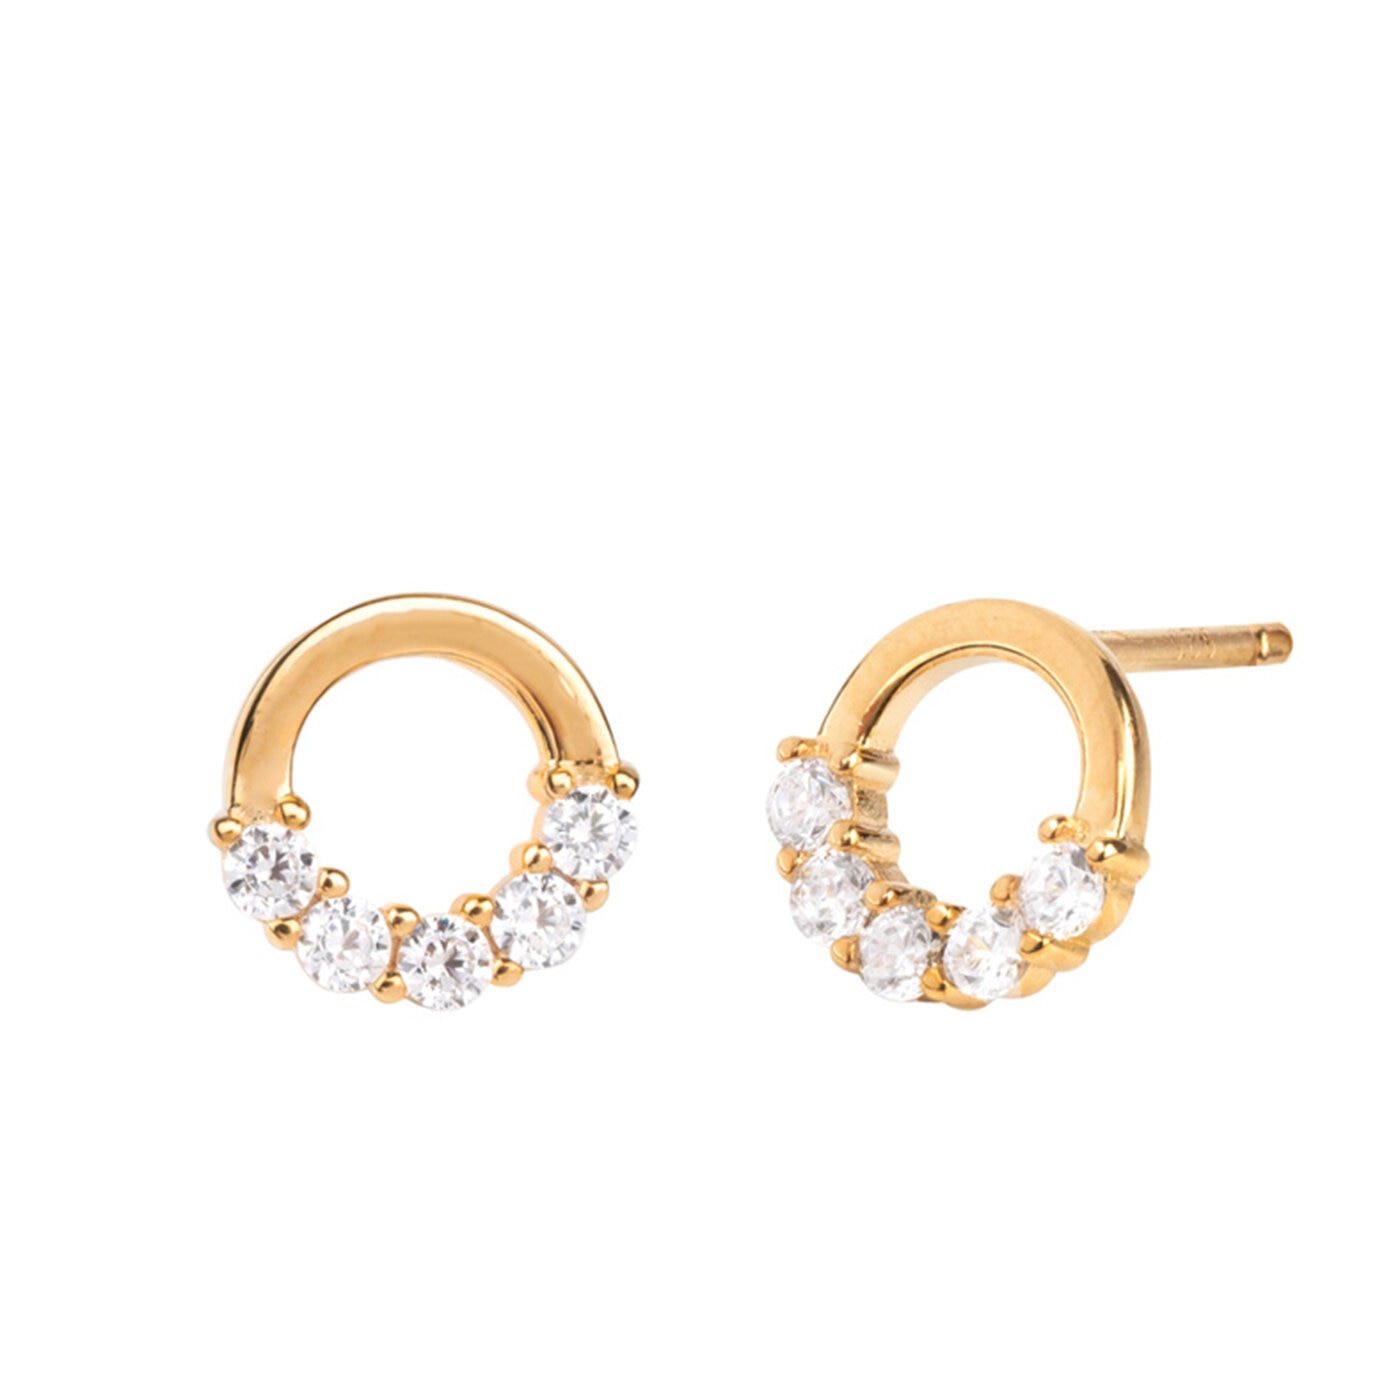 Circles zircons earrings